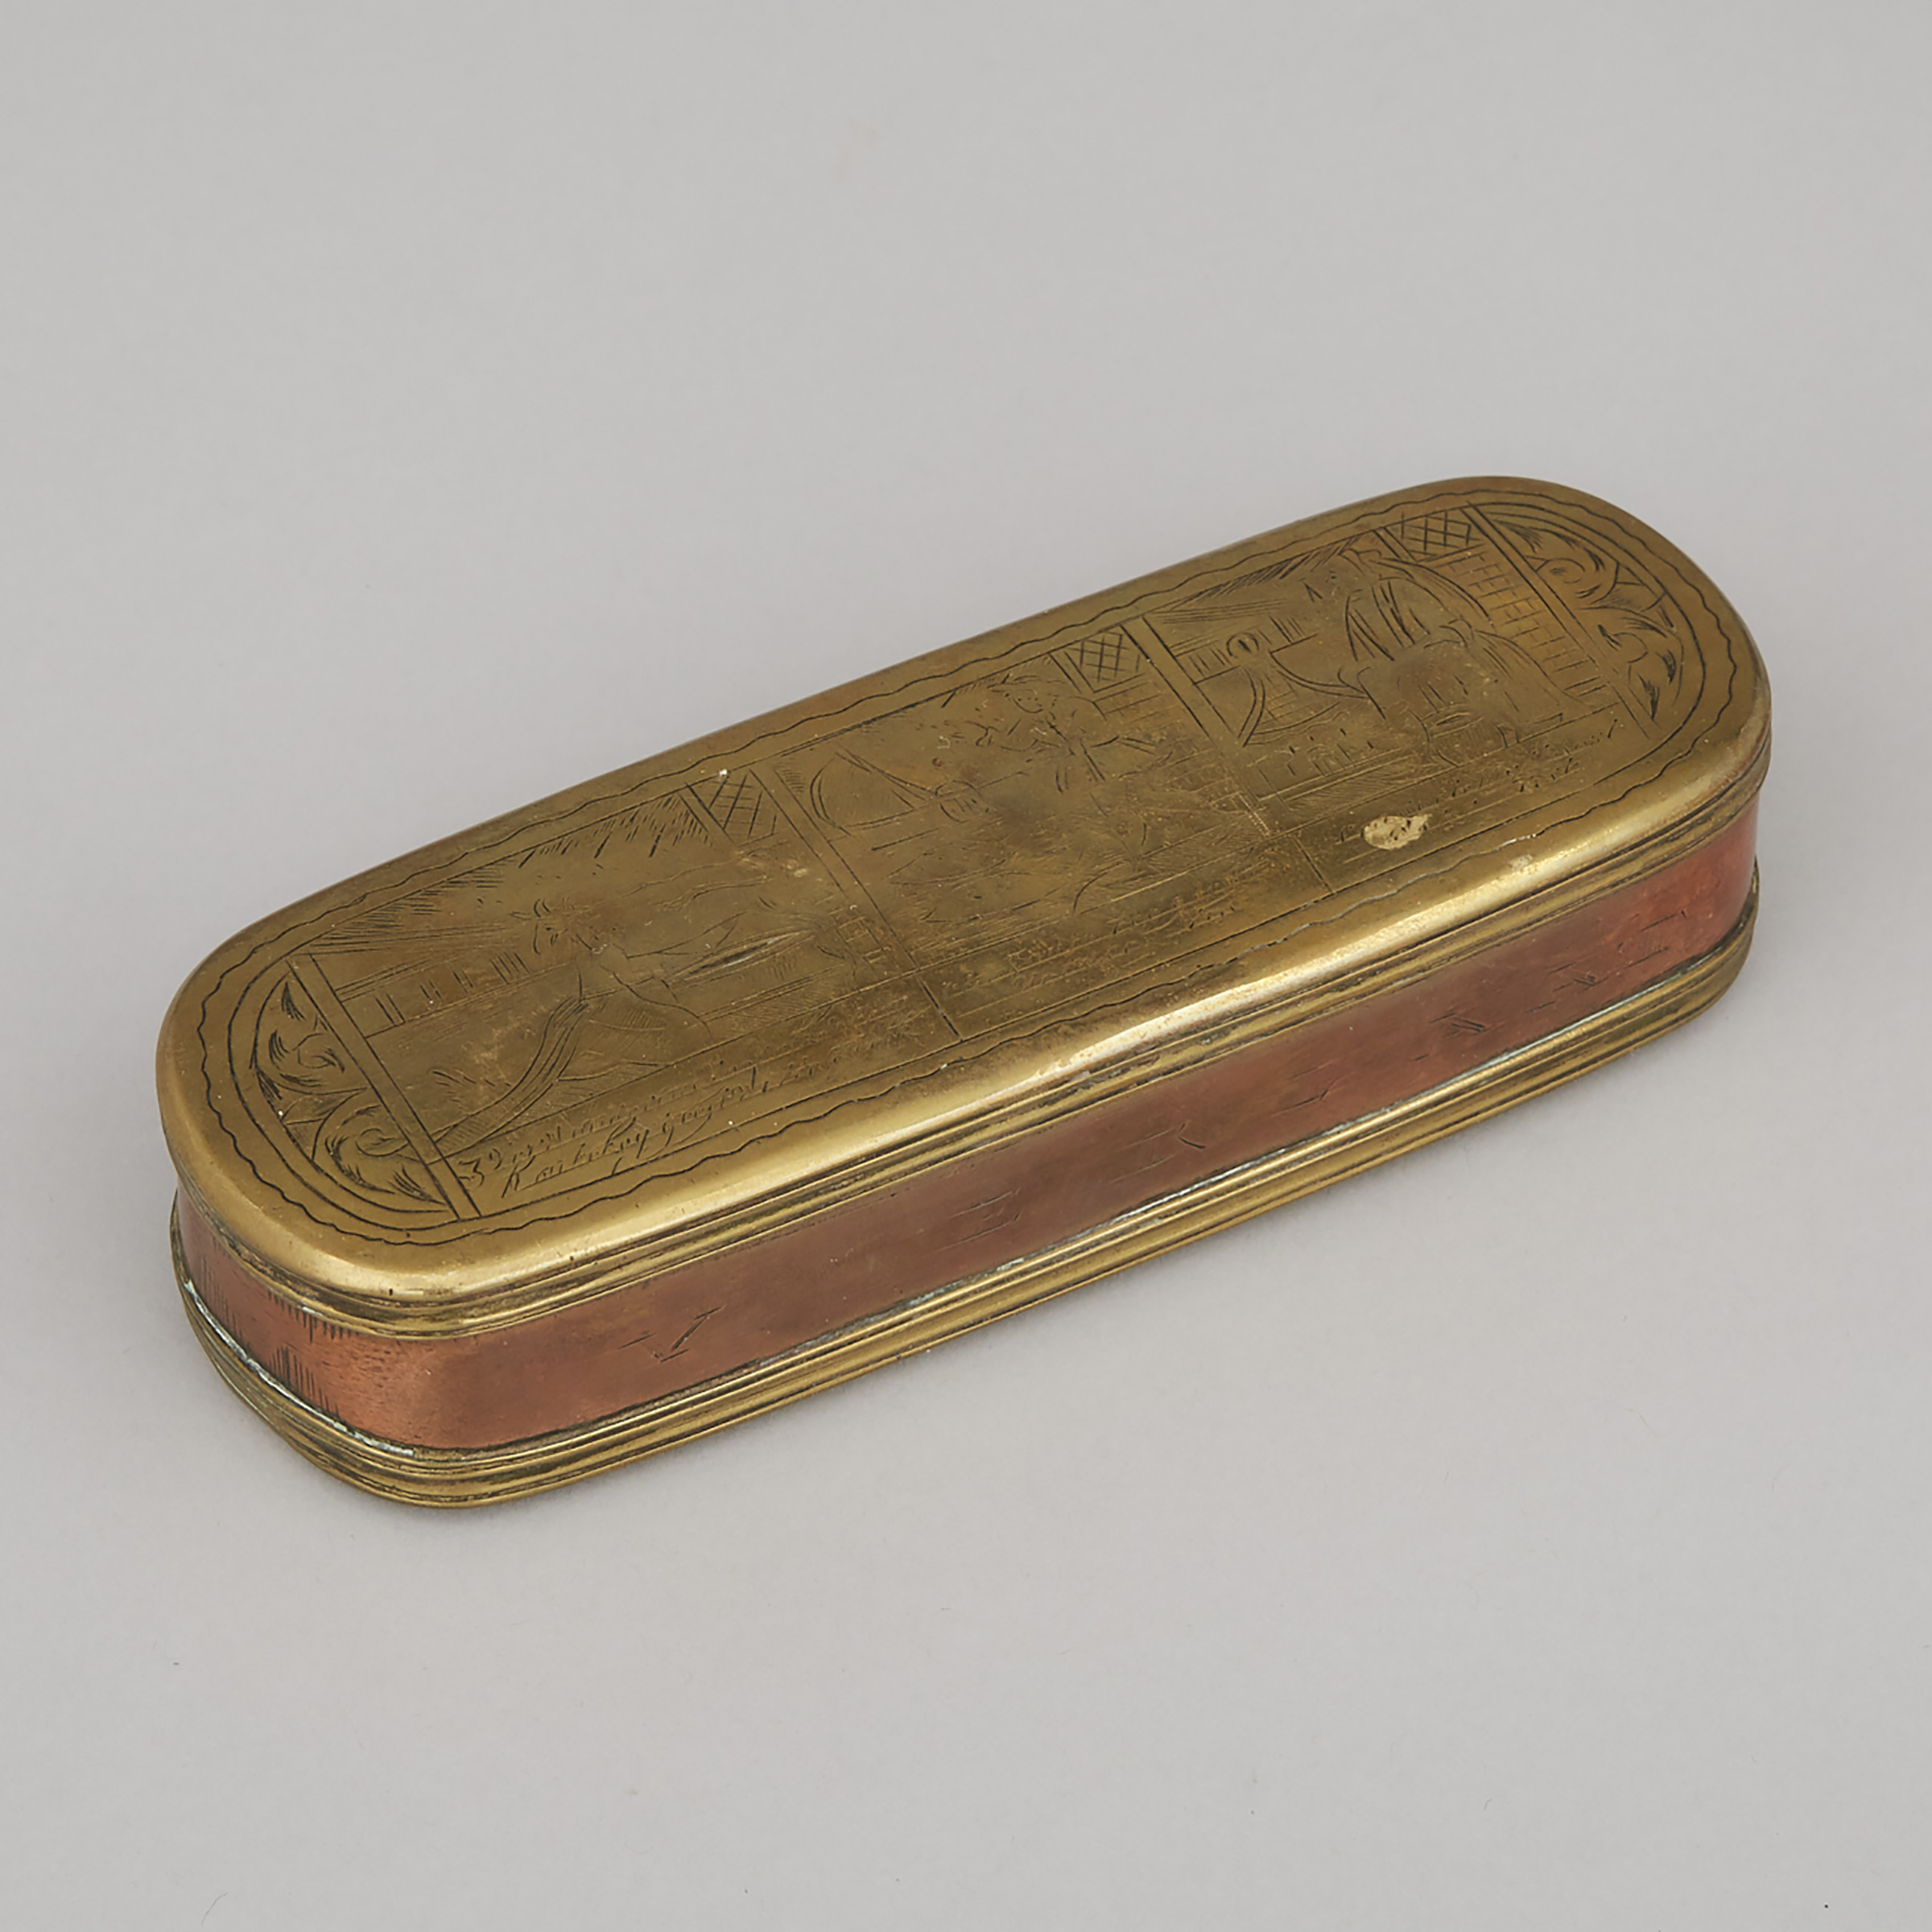 Dutch Copper and Brass Tobacco Box, 18th century